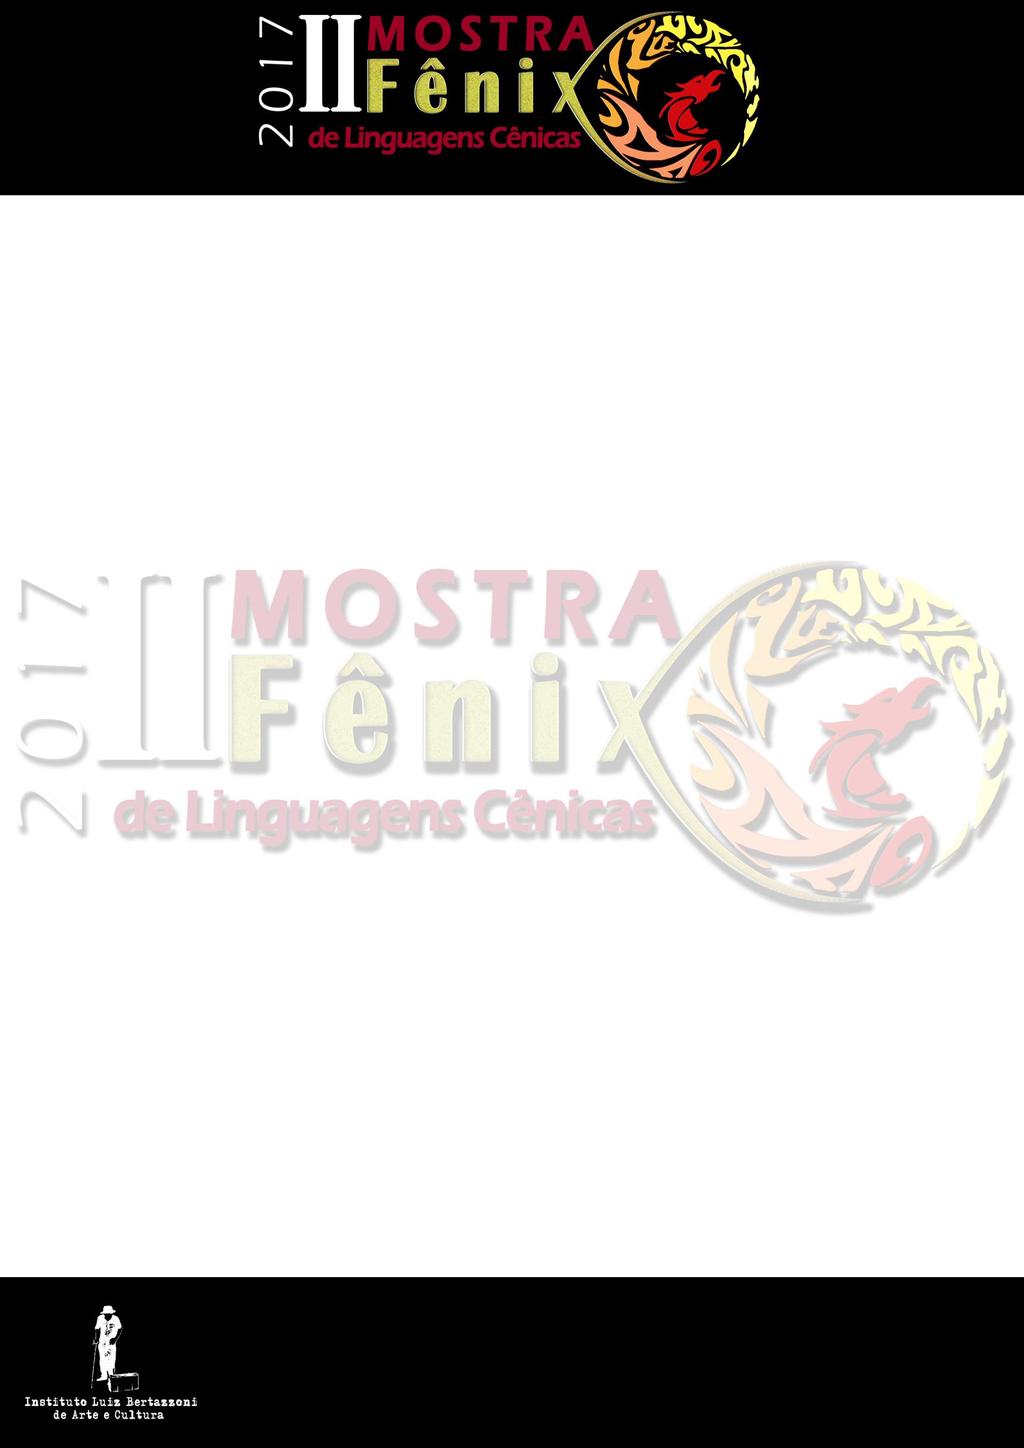 Lista de Indicações e Premiações da II Mostra Fênix de Linguagens Cênicas Parabéns a Todos os Participantes!